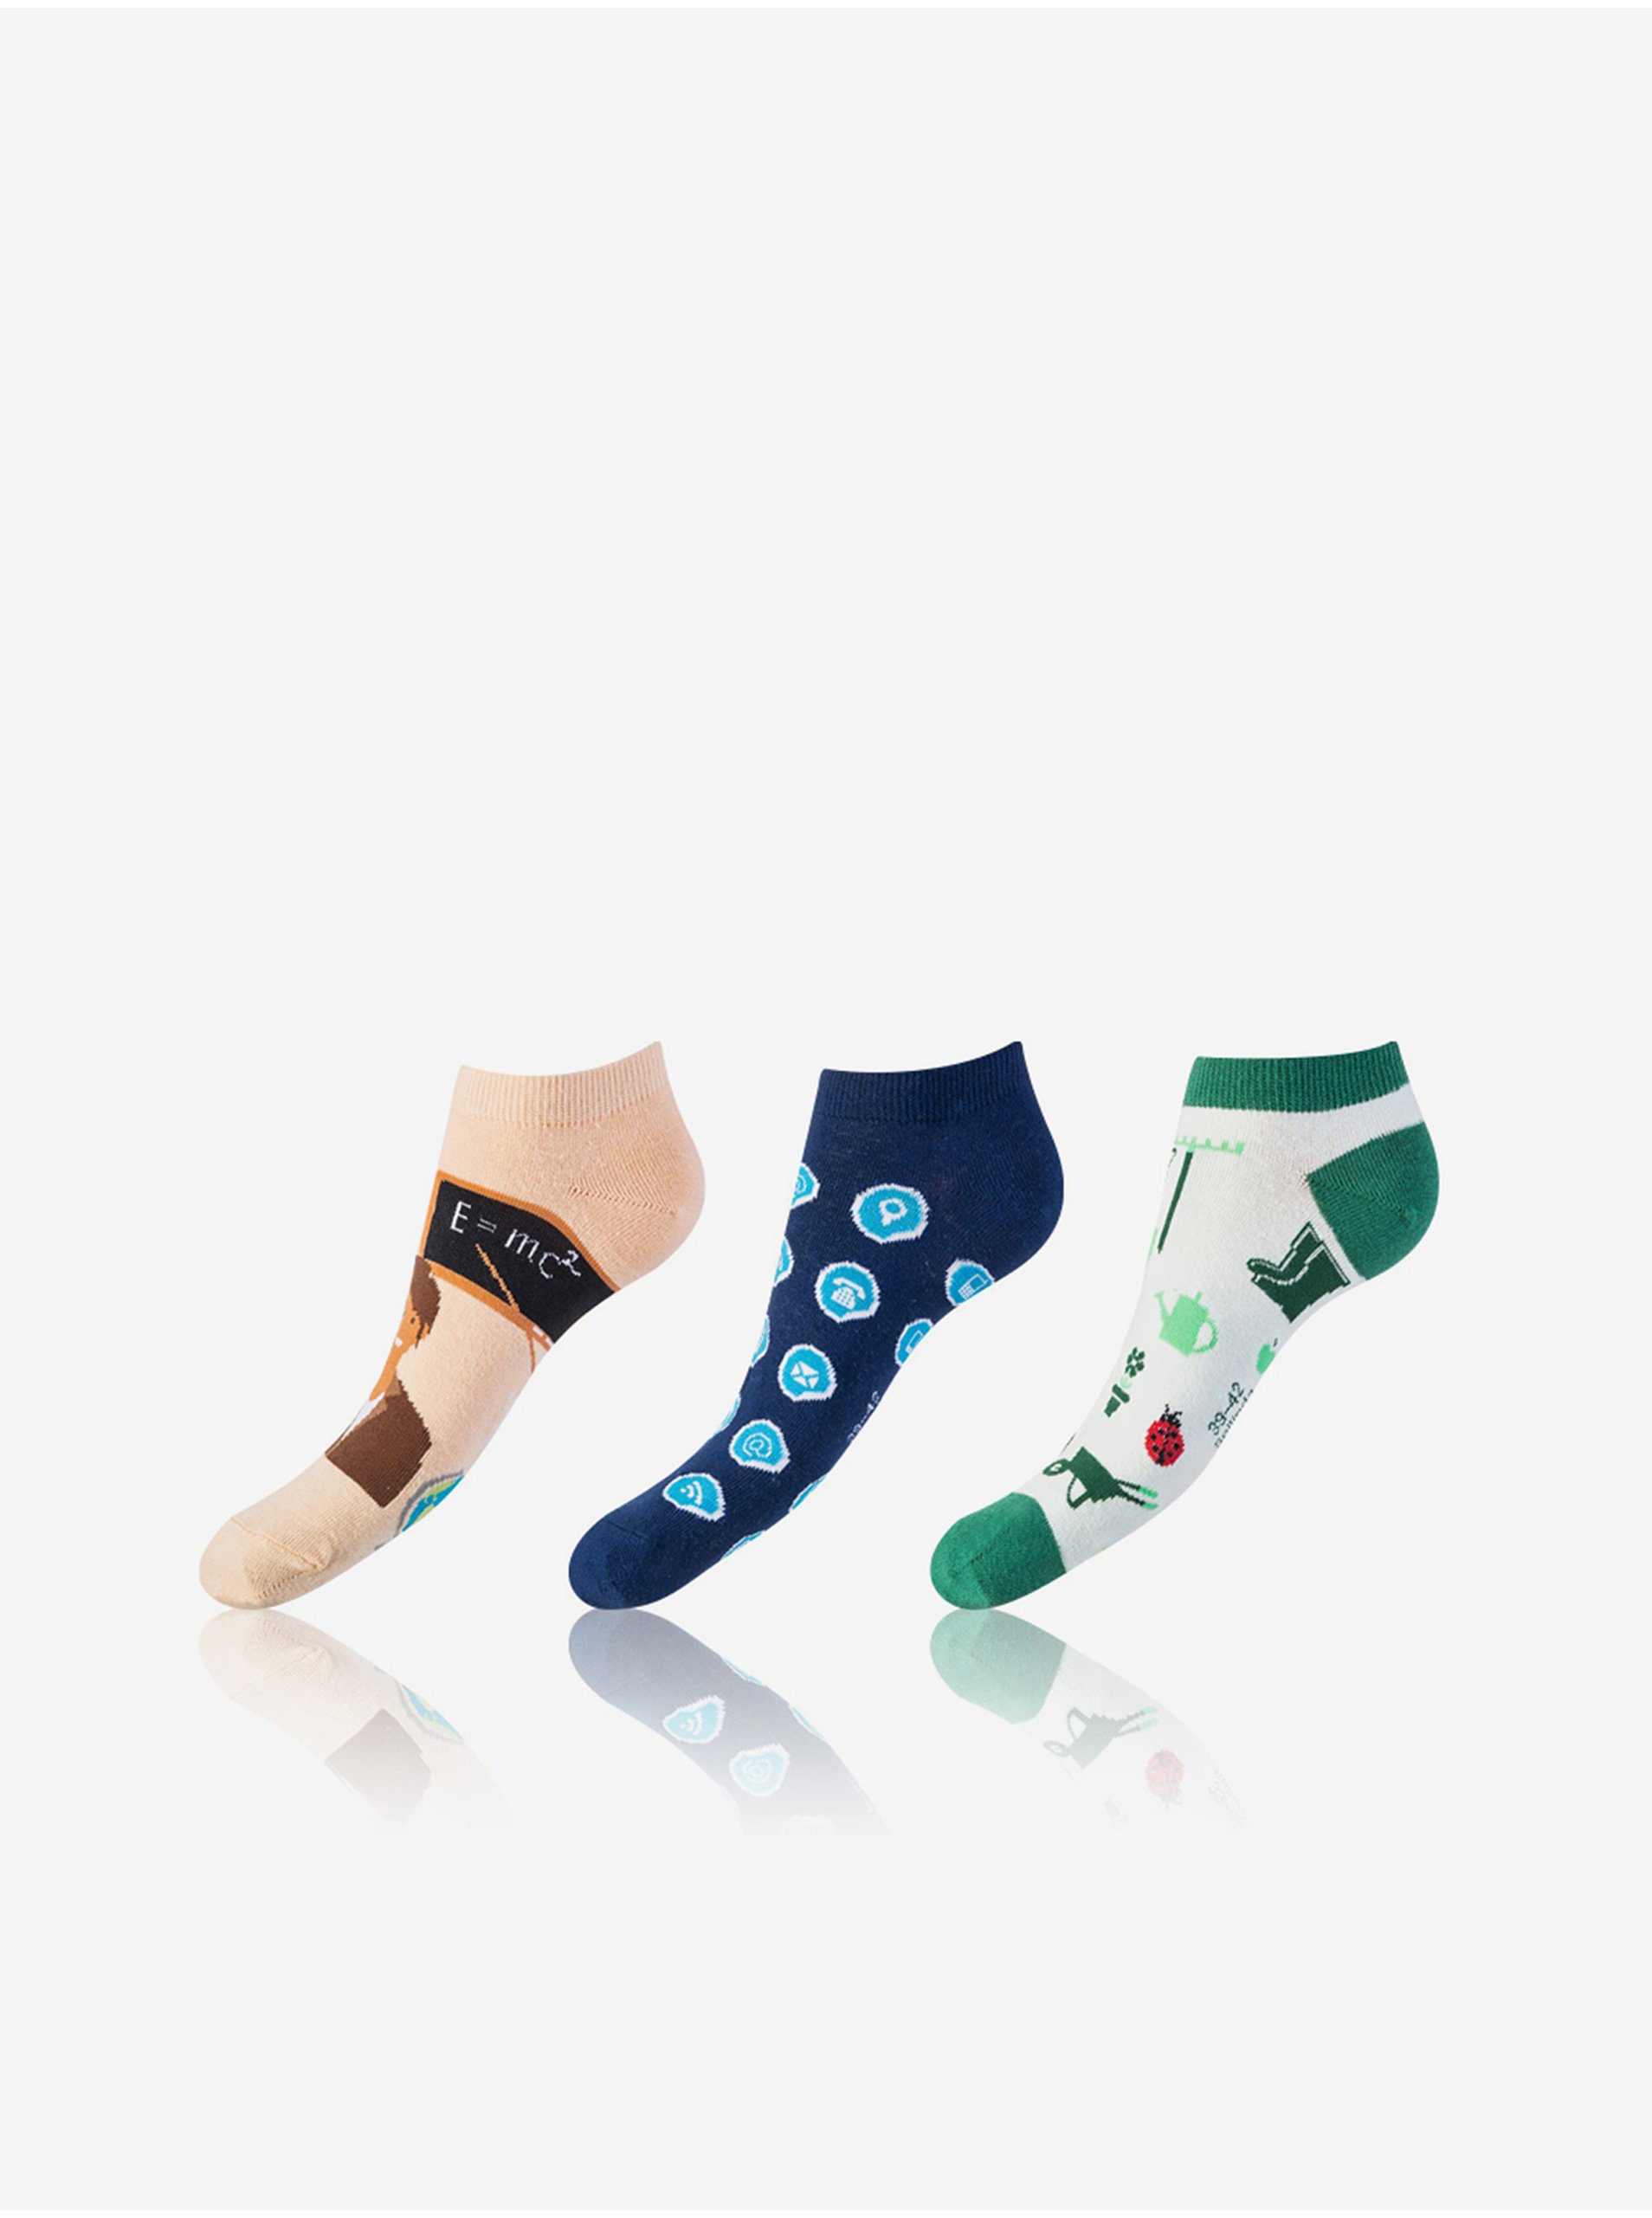 E-shop Sada tří unisex vzorovaných ponožek v modré, zelené a světle růžové barvě Bellinda CRAZY IN-SHOE SOCKS 3x